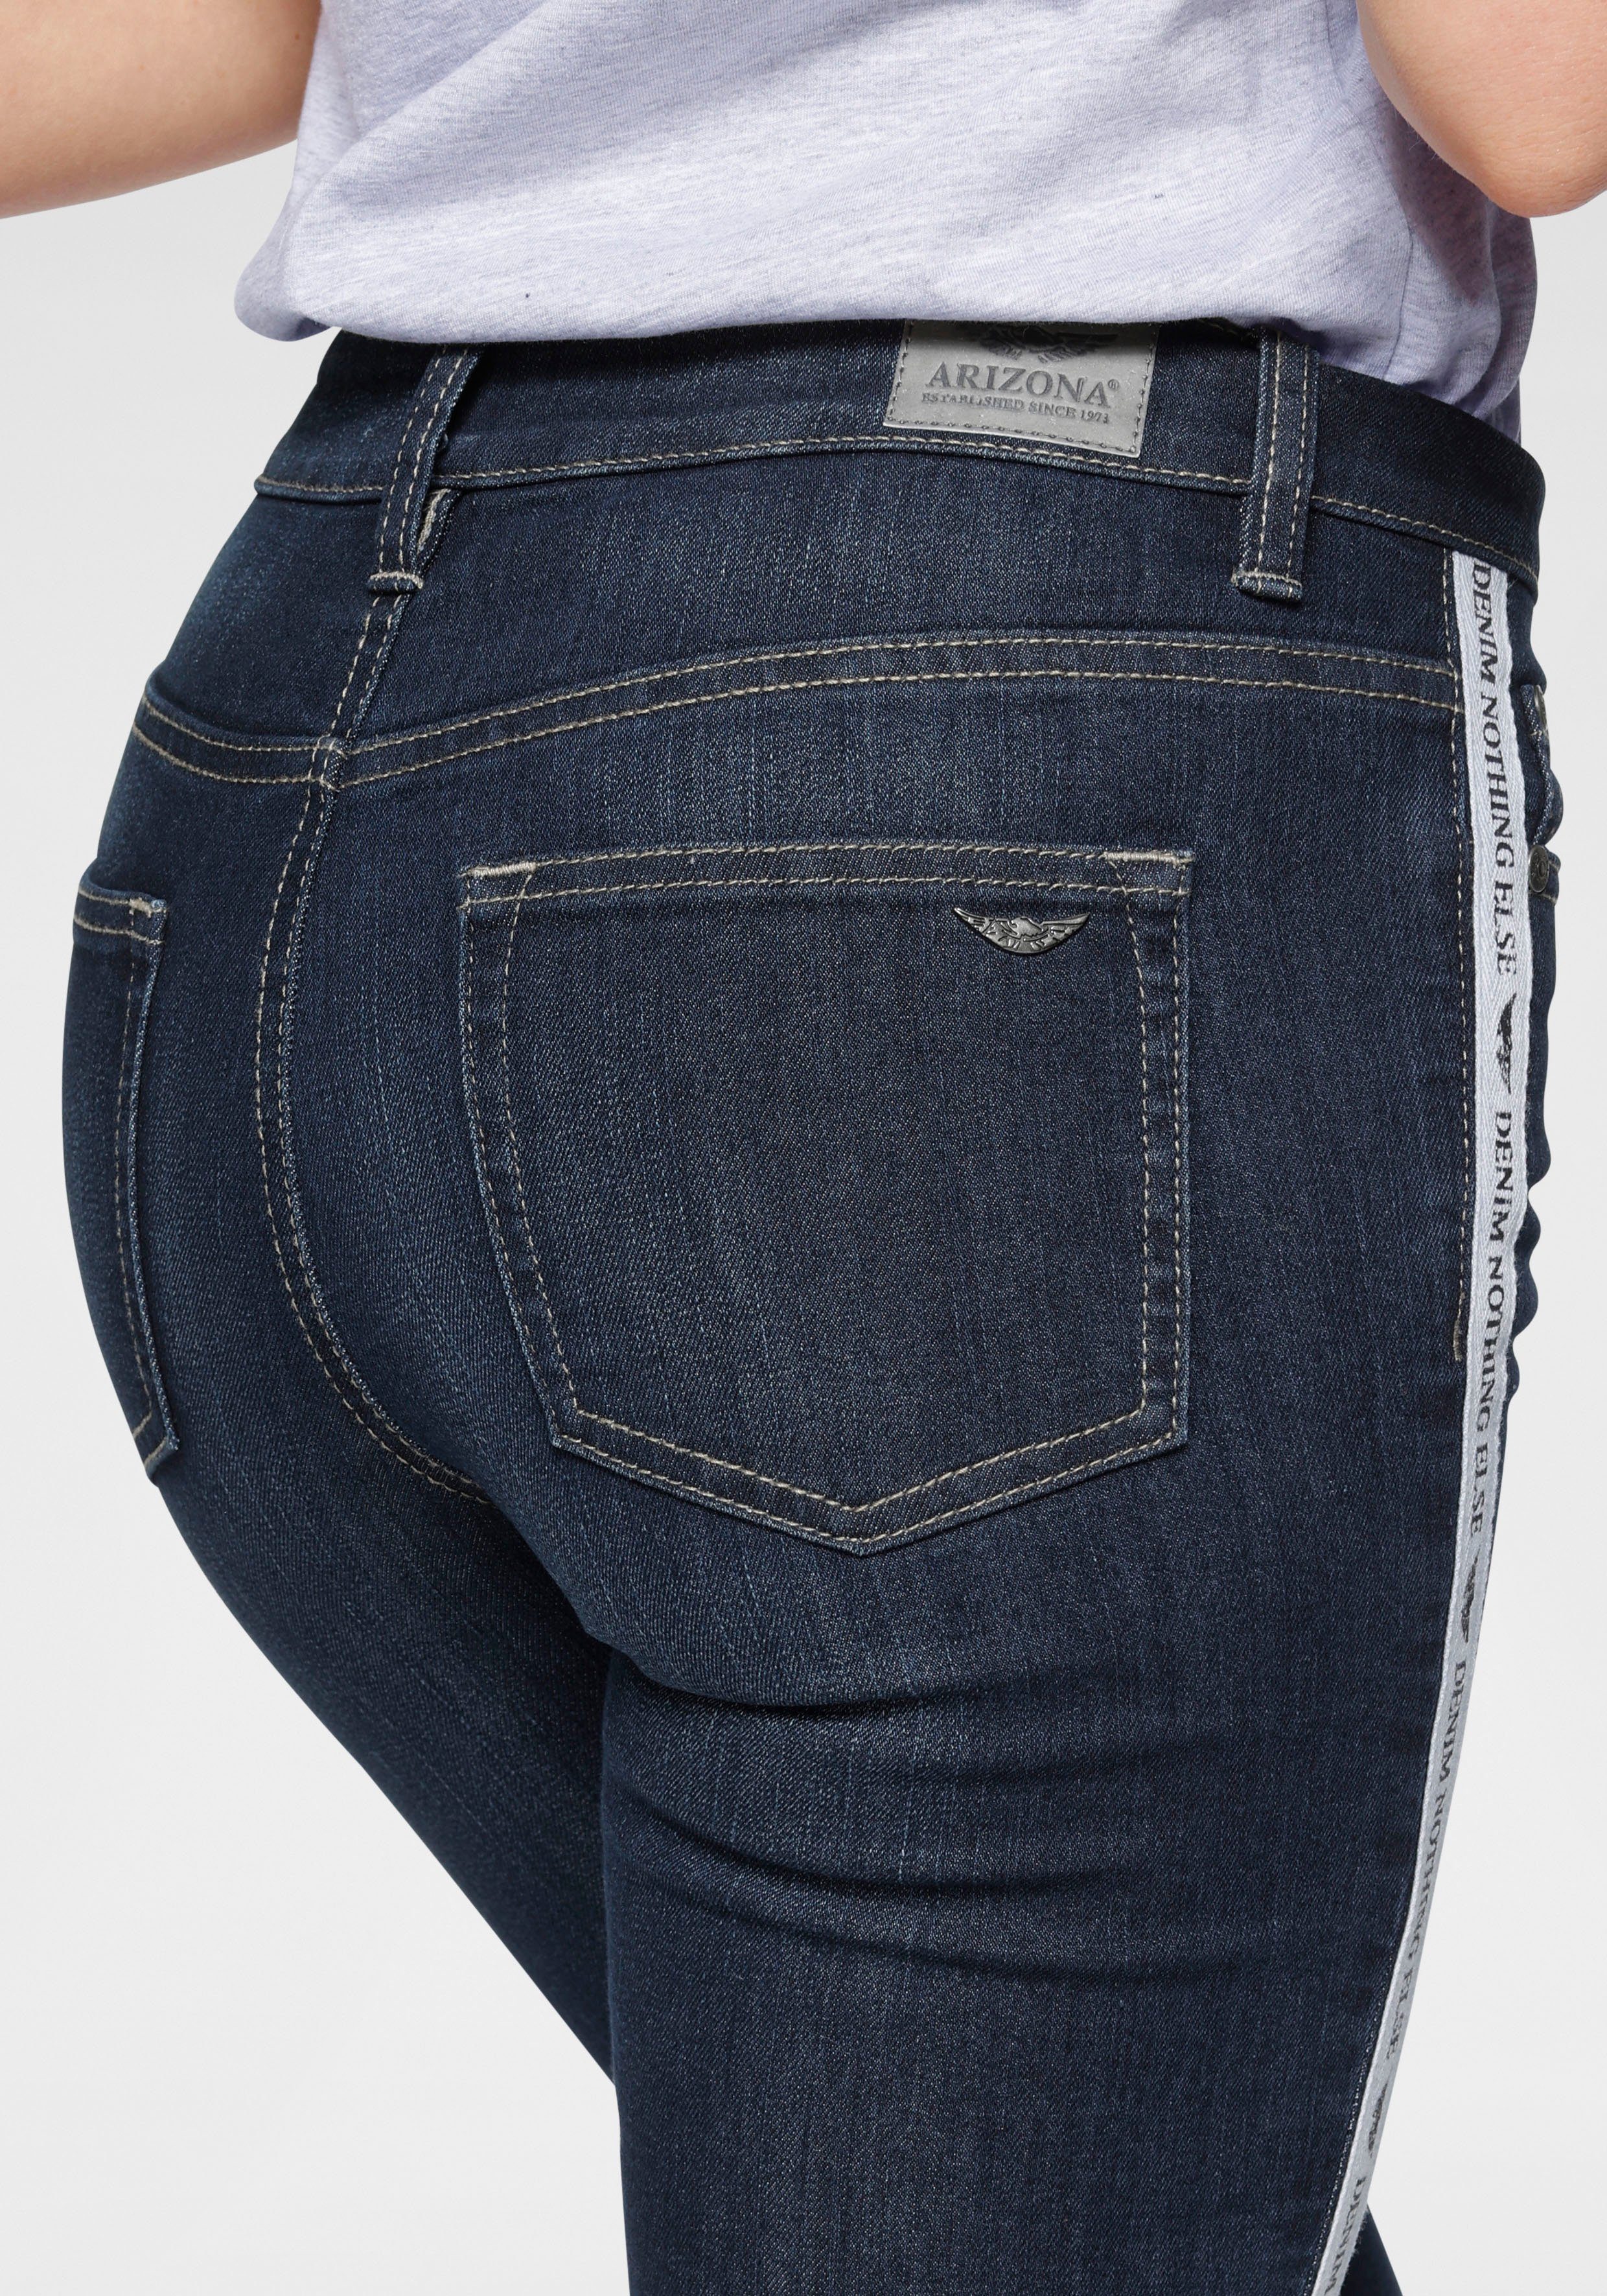 coolem Seitenstreifen Waist High mit Arizona Slim-fit-Jeans